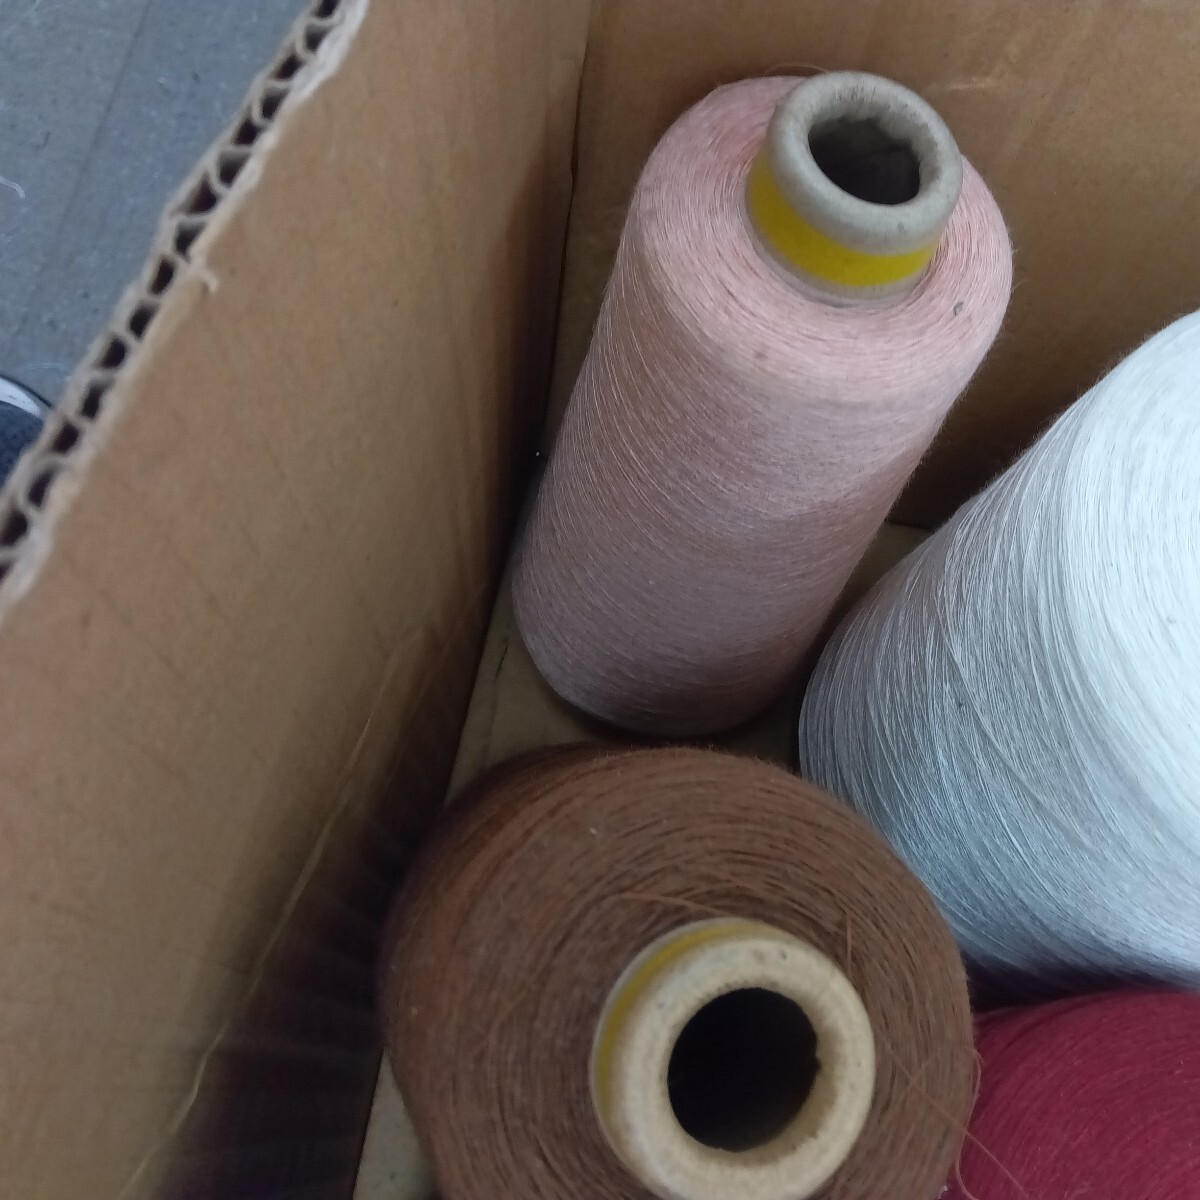 100%ピュアリネン 麻 リネン 毛糸 手織り 手編み 刺し子 さをり織り シュシュ ピアス タッセル 引き揃え糸 ハンドメイド素材 の画像3